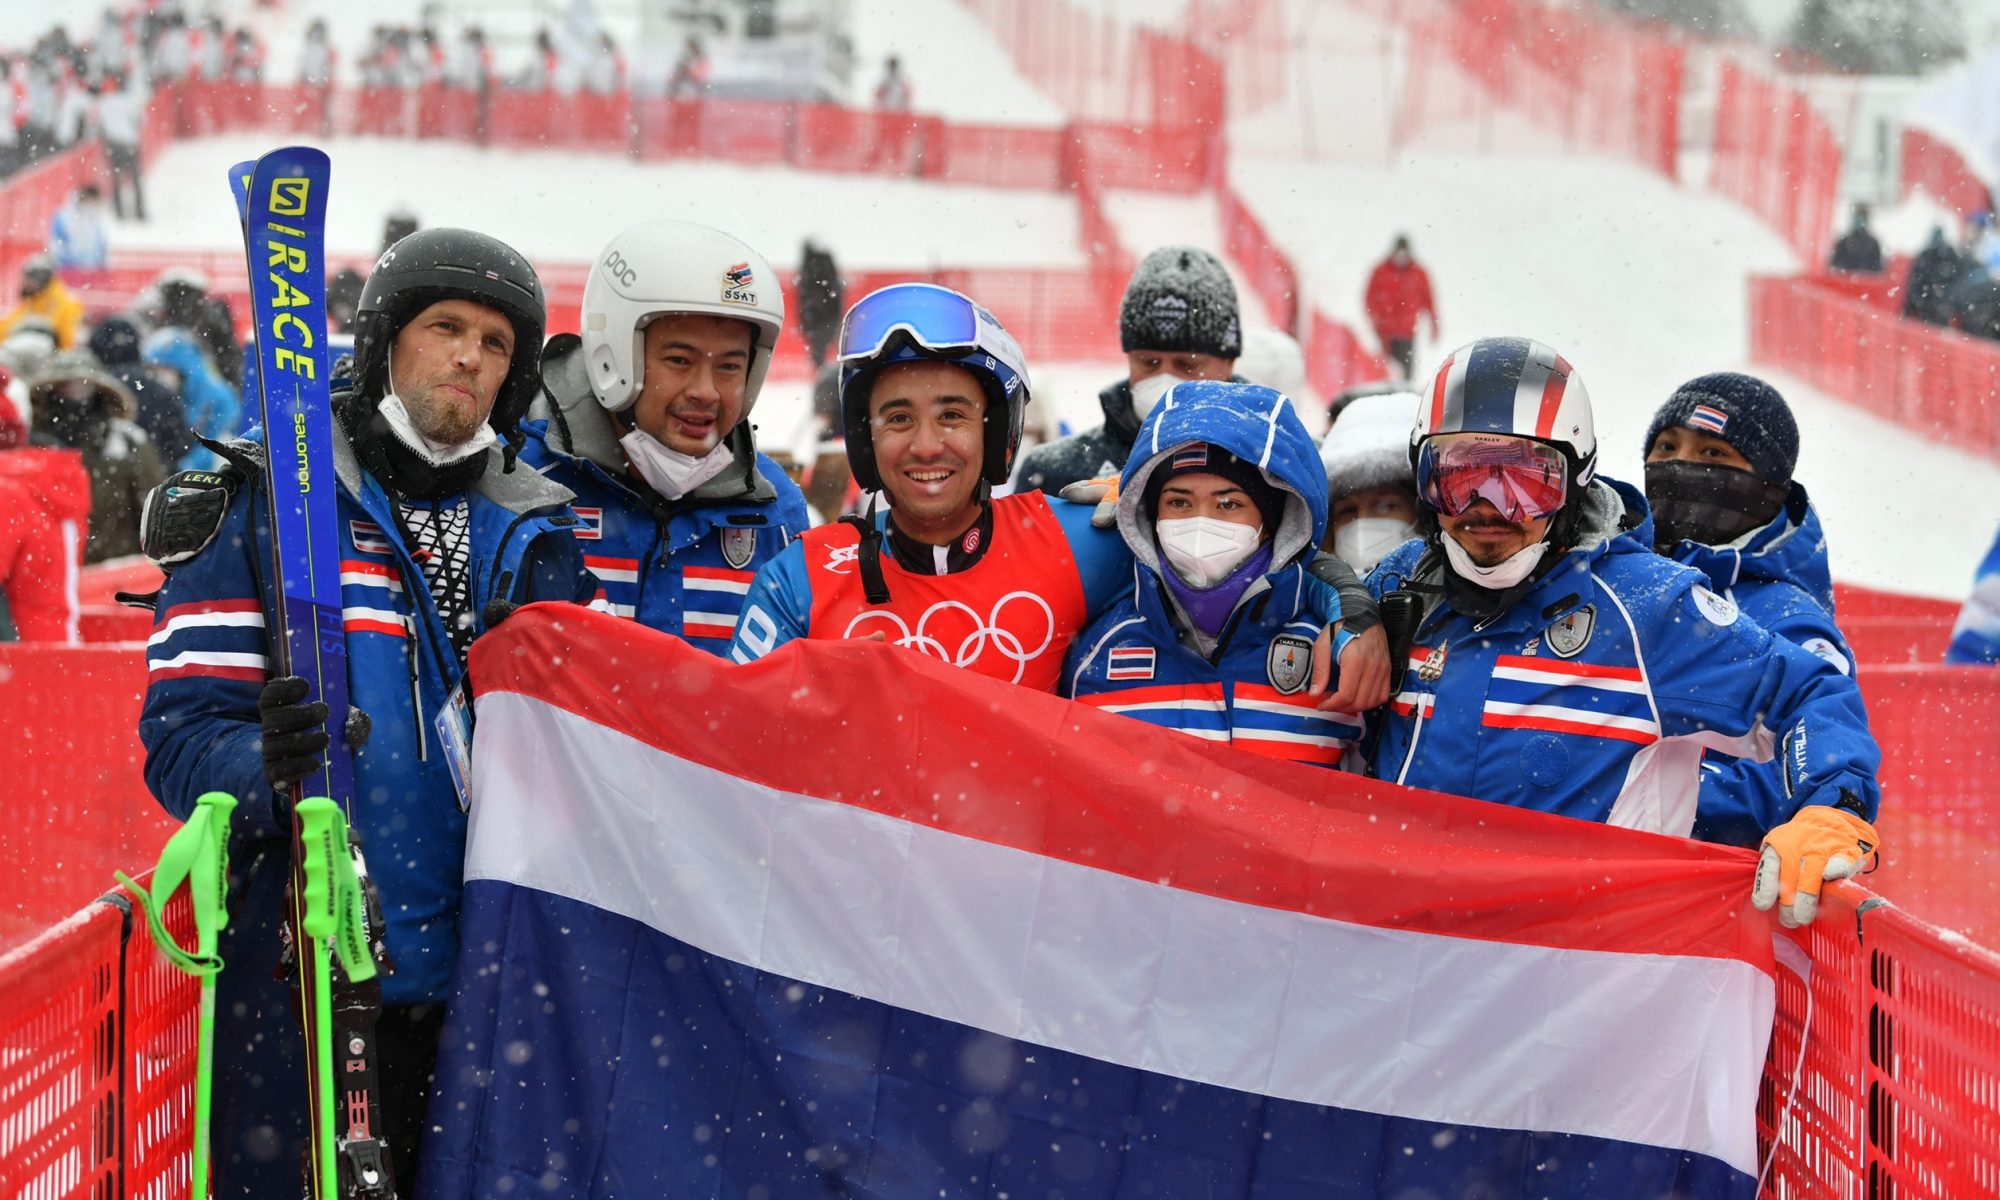 สมาคมกีฬาสกีและสโนว์บอร์ดแห่งประเทศไทย